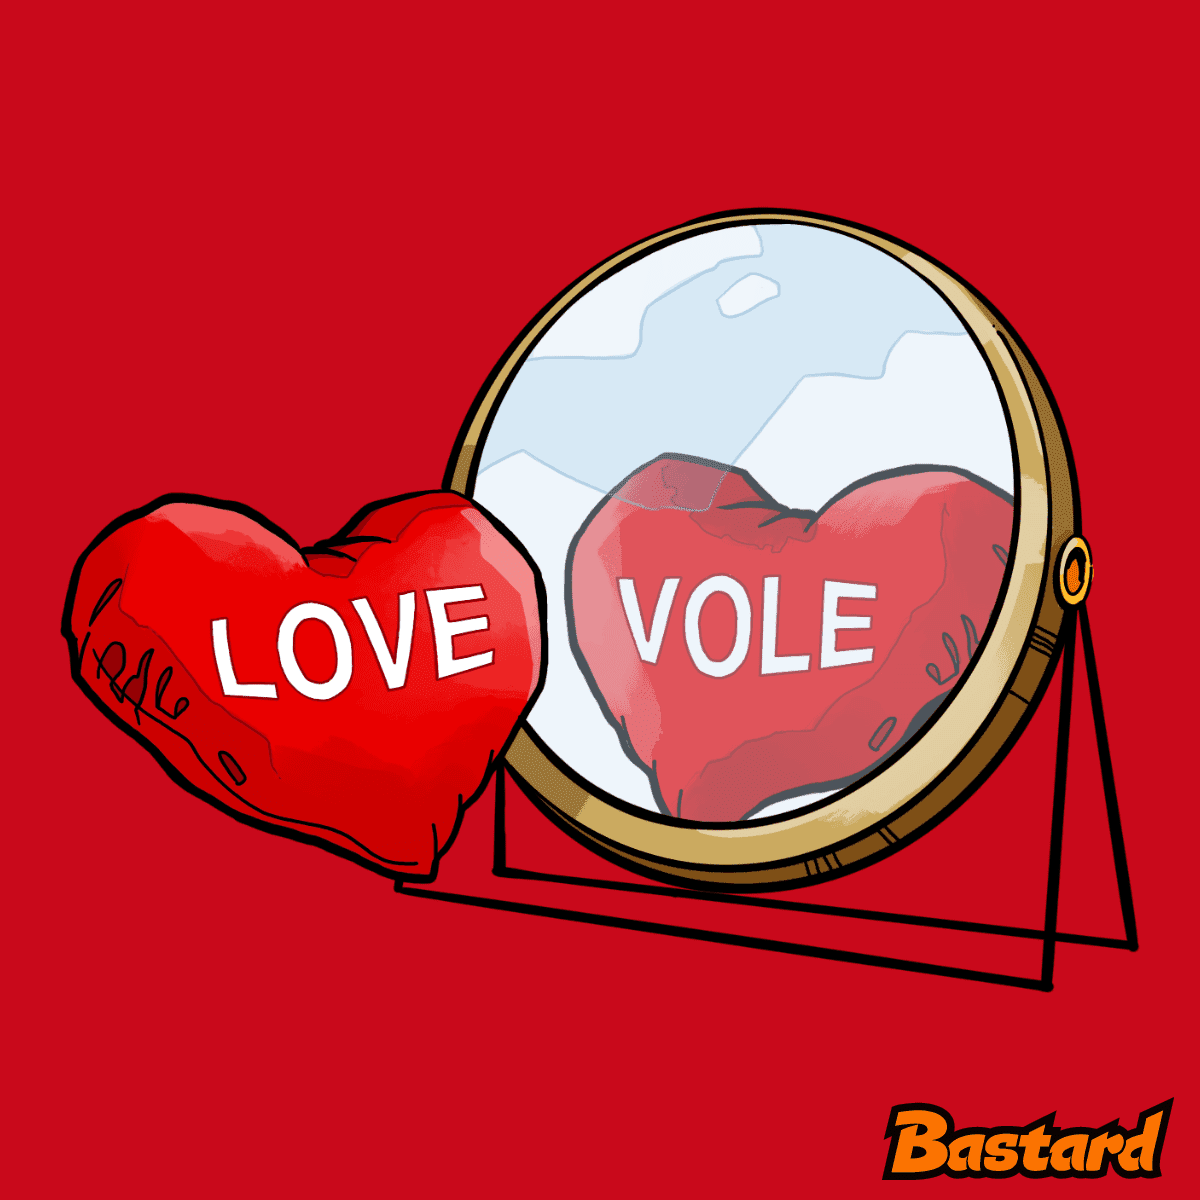 Love vole